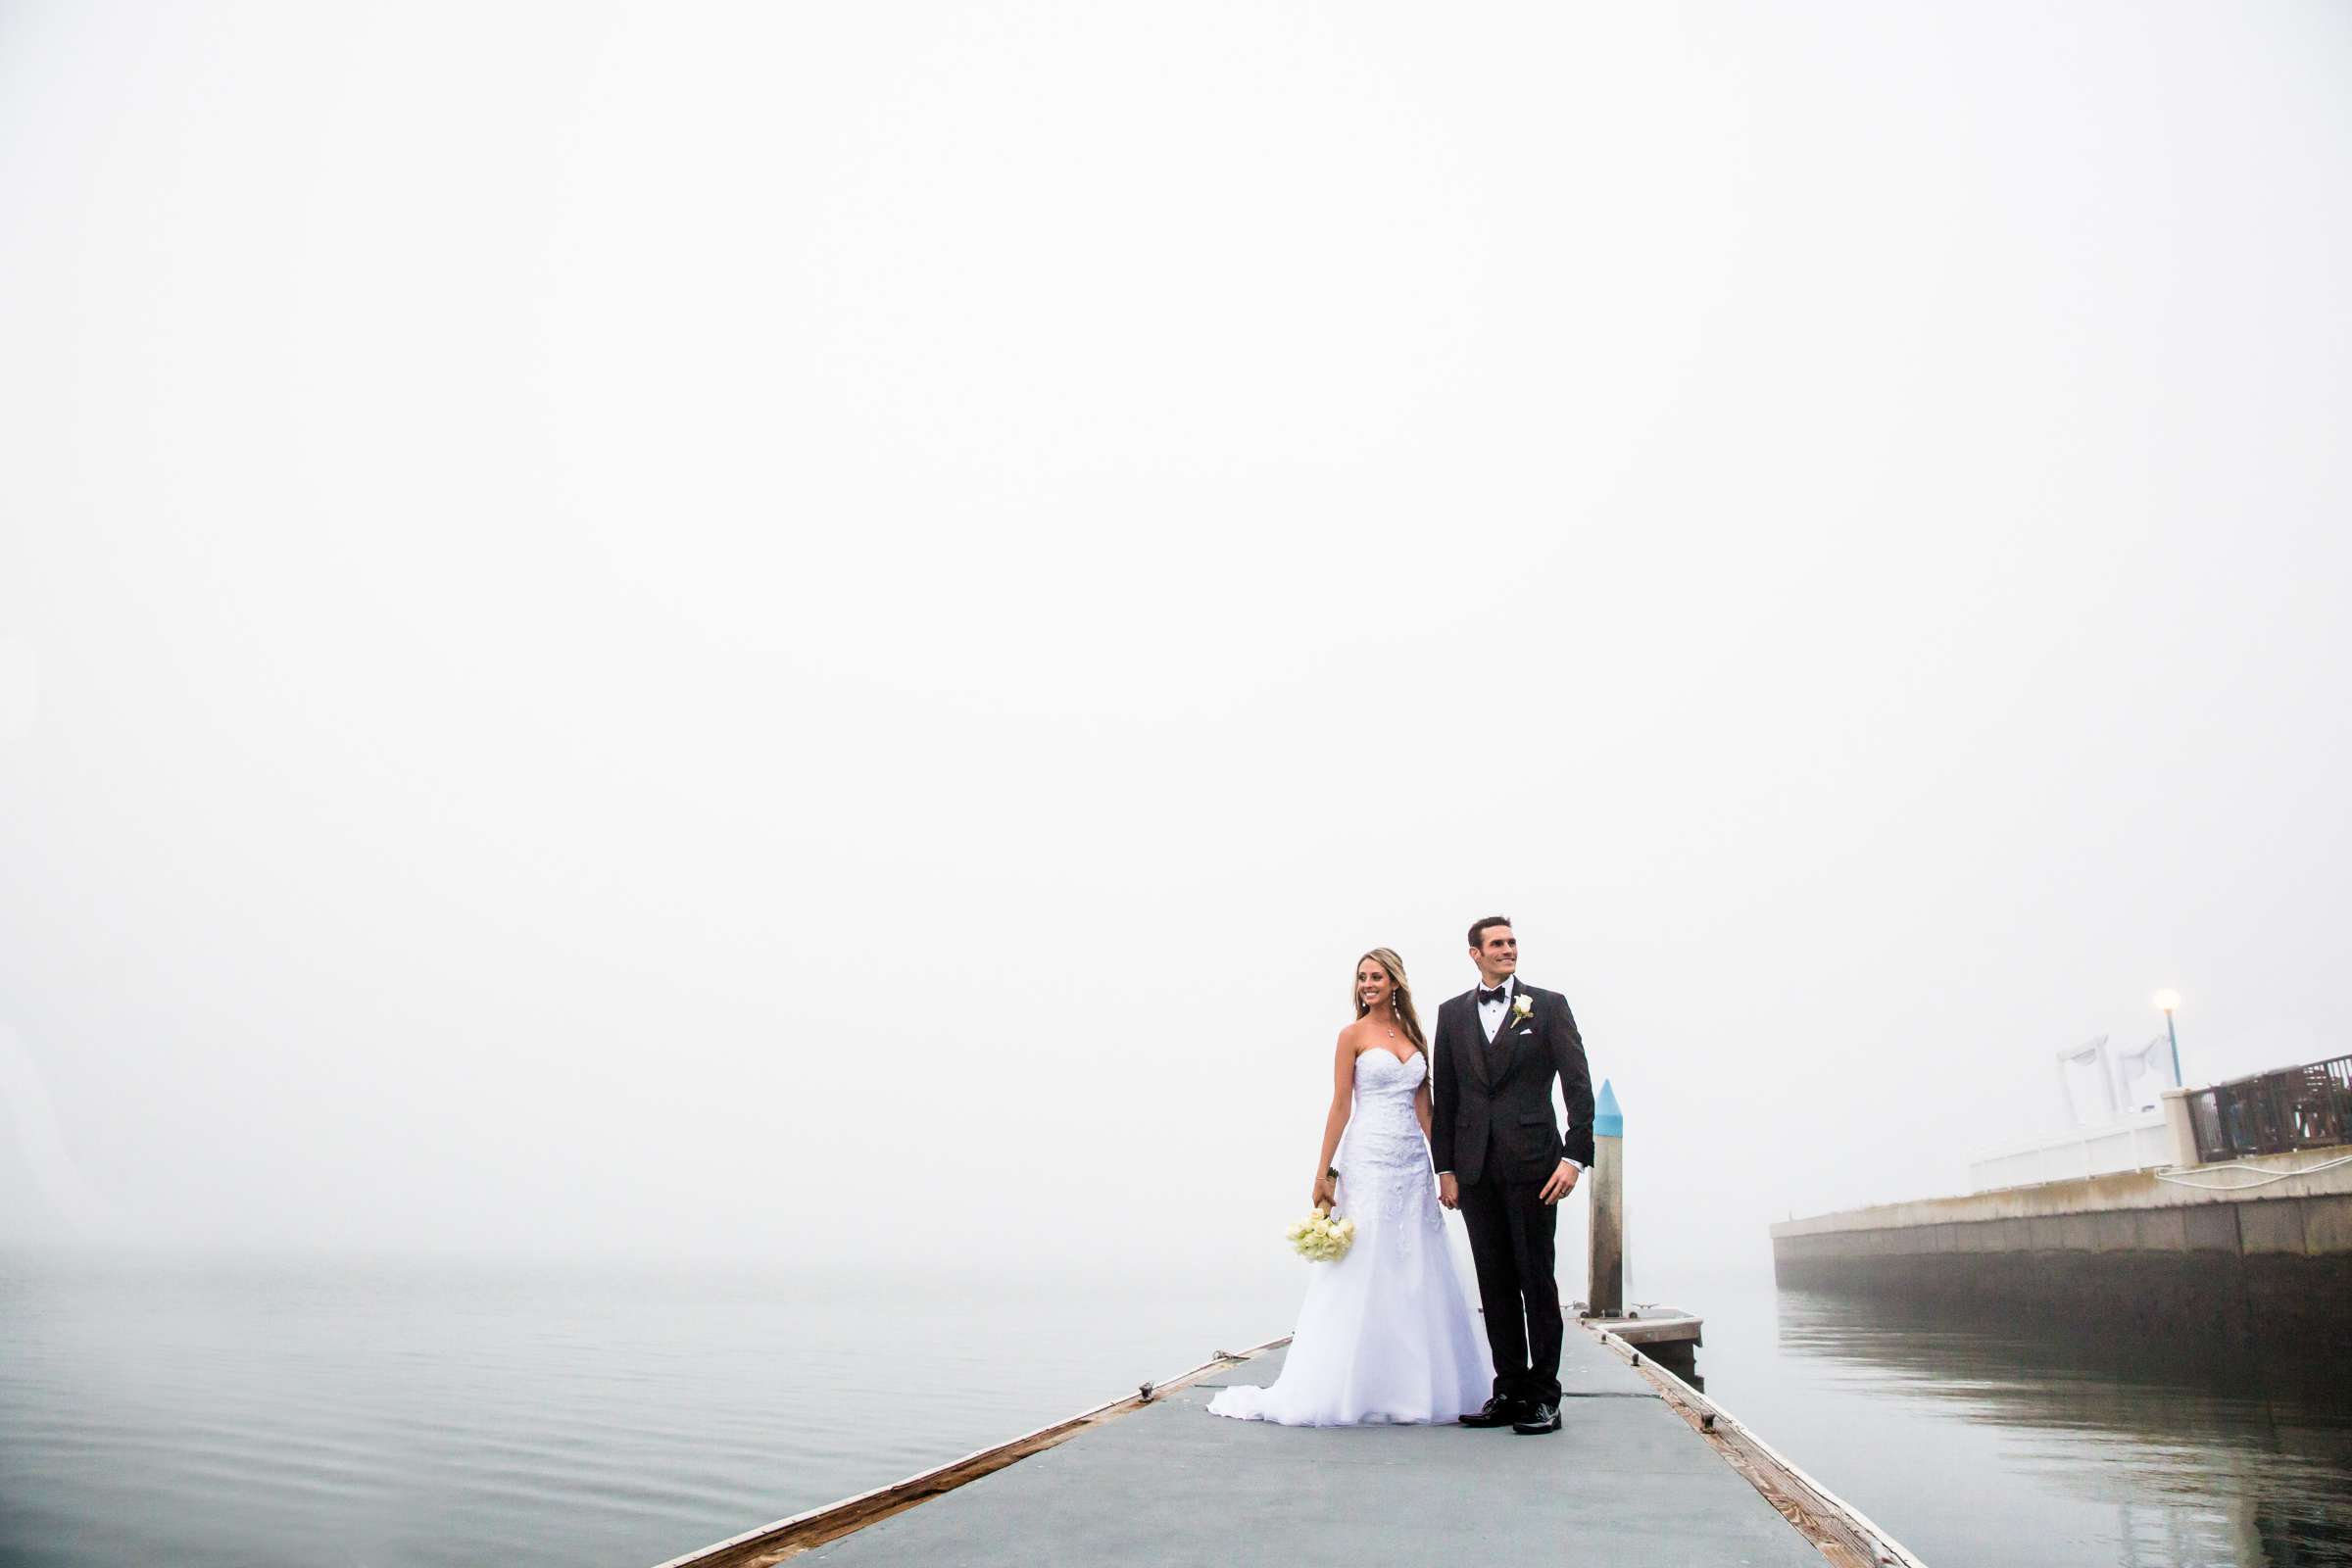 Stylized Portrait at Coronado Cays Yacht Club Wedding, Jenn and Nick Wedding Photo #4 by True Photography